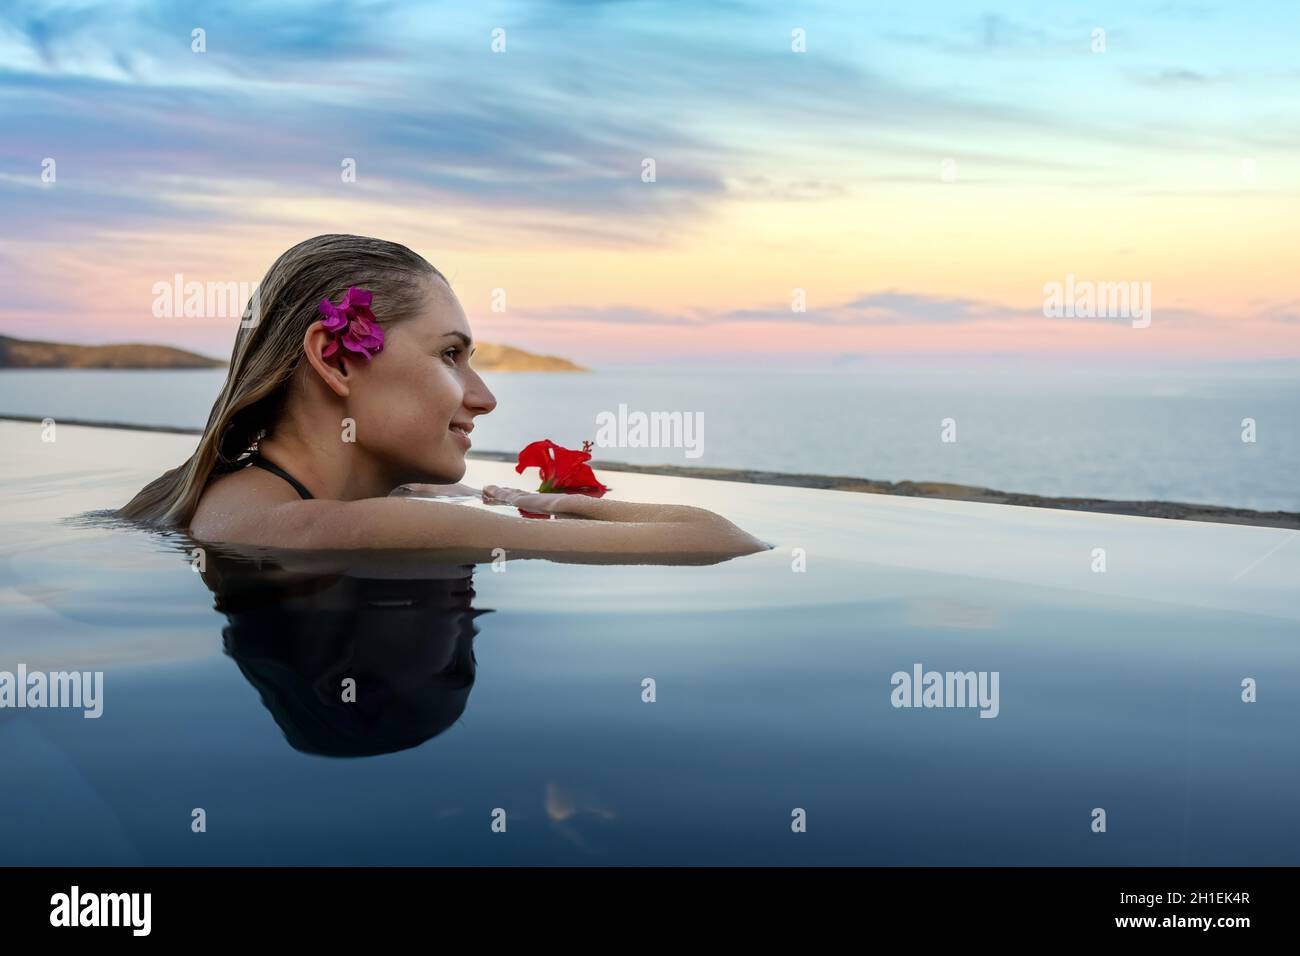 vacanza resort di lusso - donna con fiore nei capelli rilassante nella piscina a sfioro con vista mare. spazio copia Foto Stock